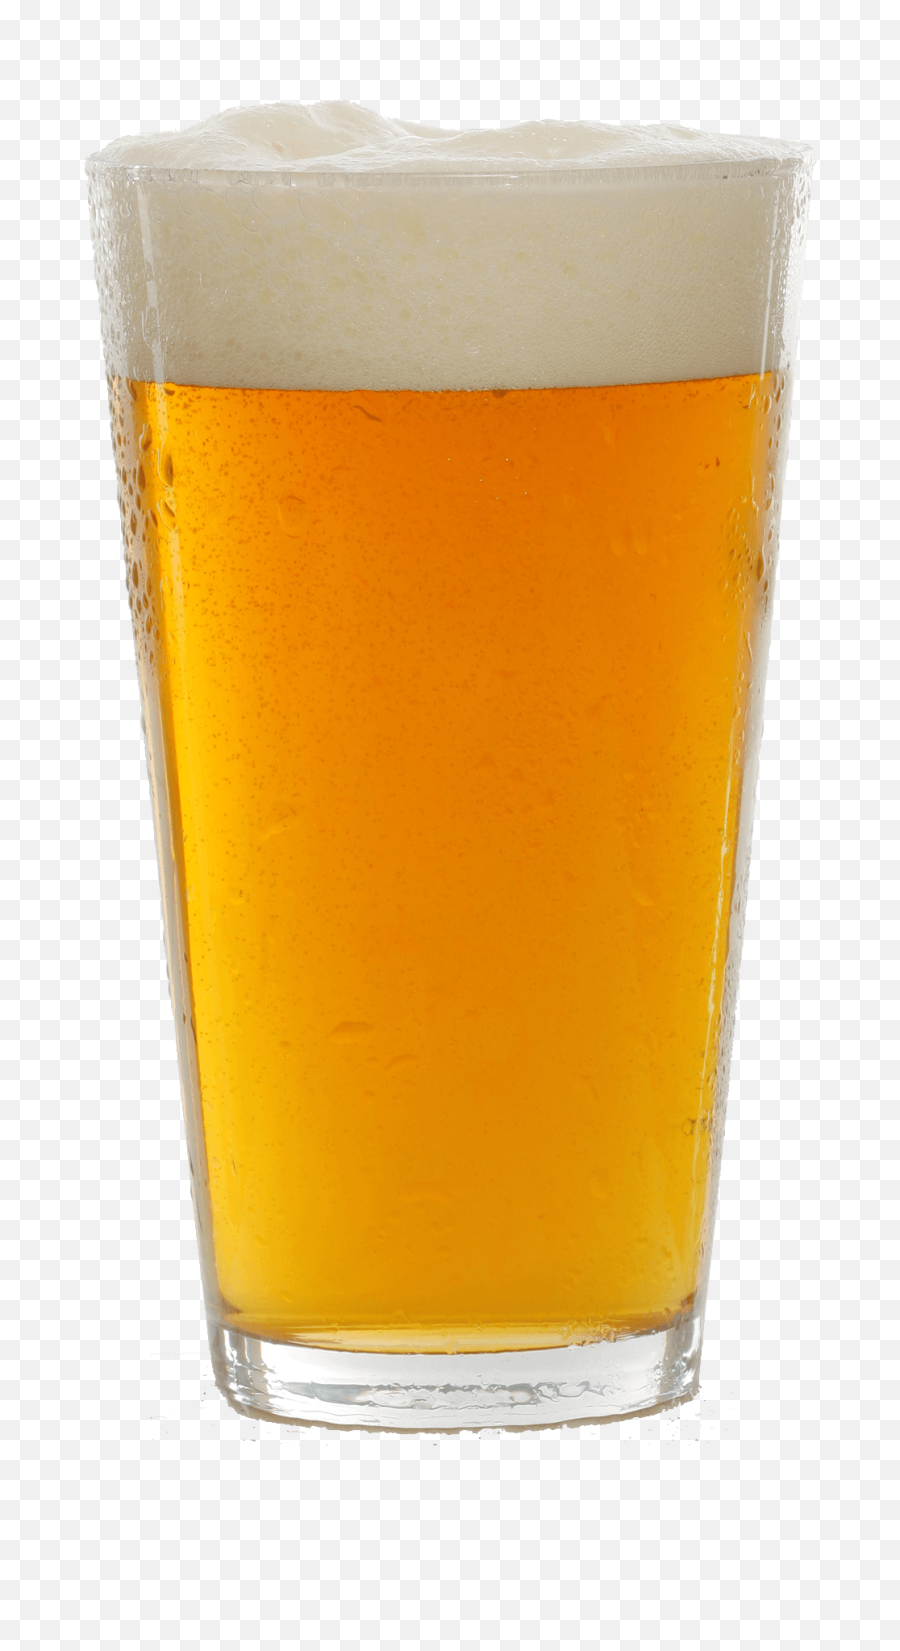 Download Free Png Beer In Mug - Beer Pint Glass Png,Beer Mug Png